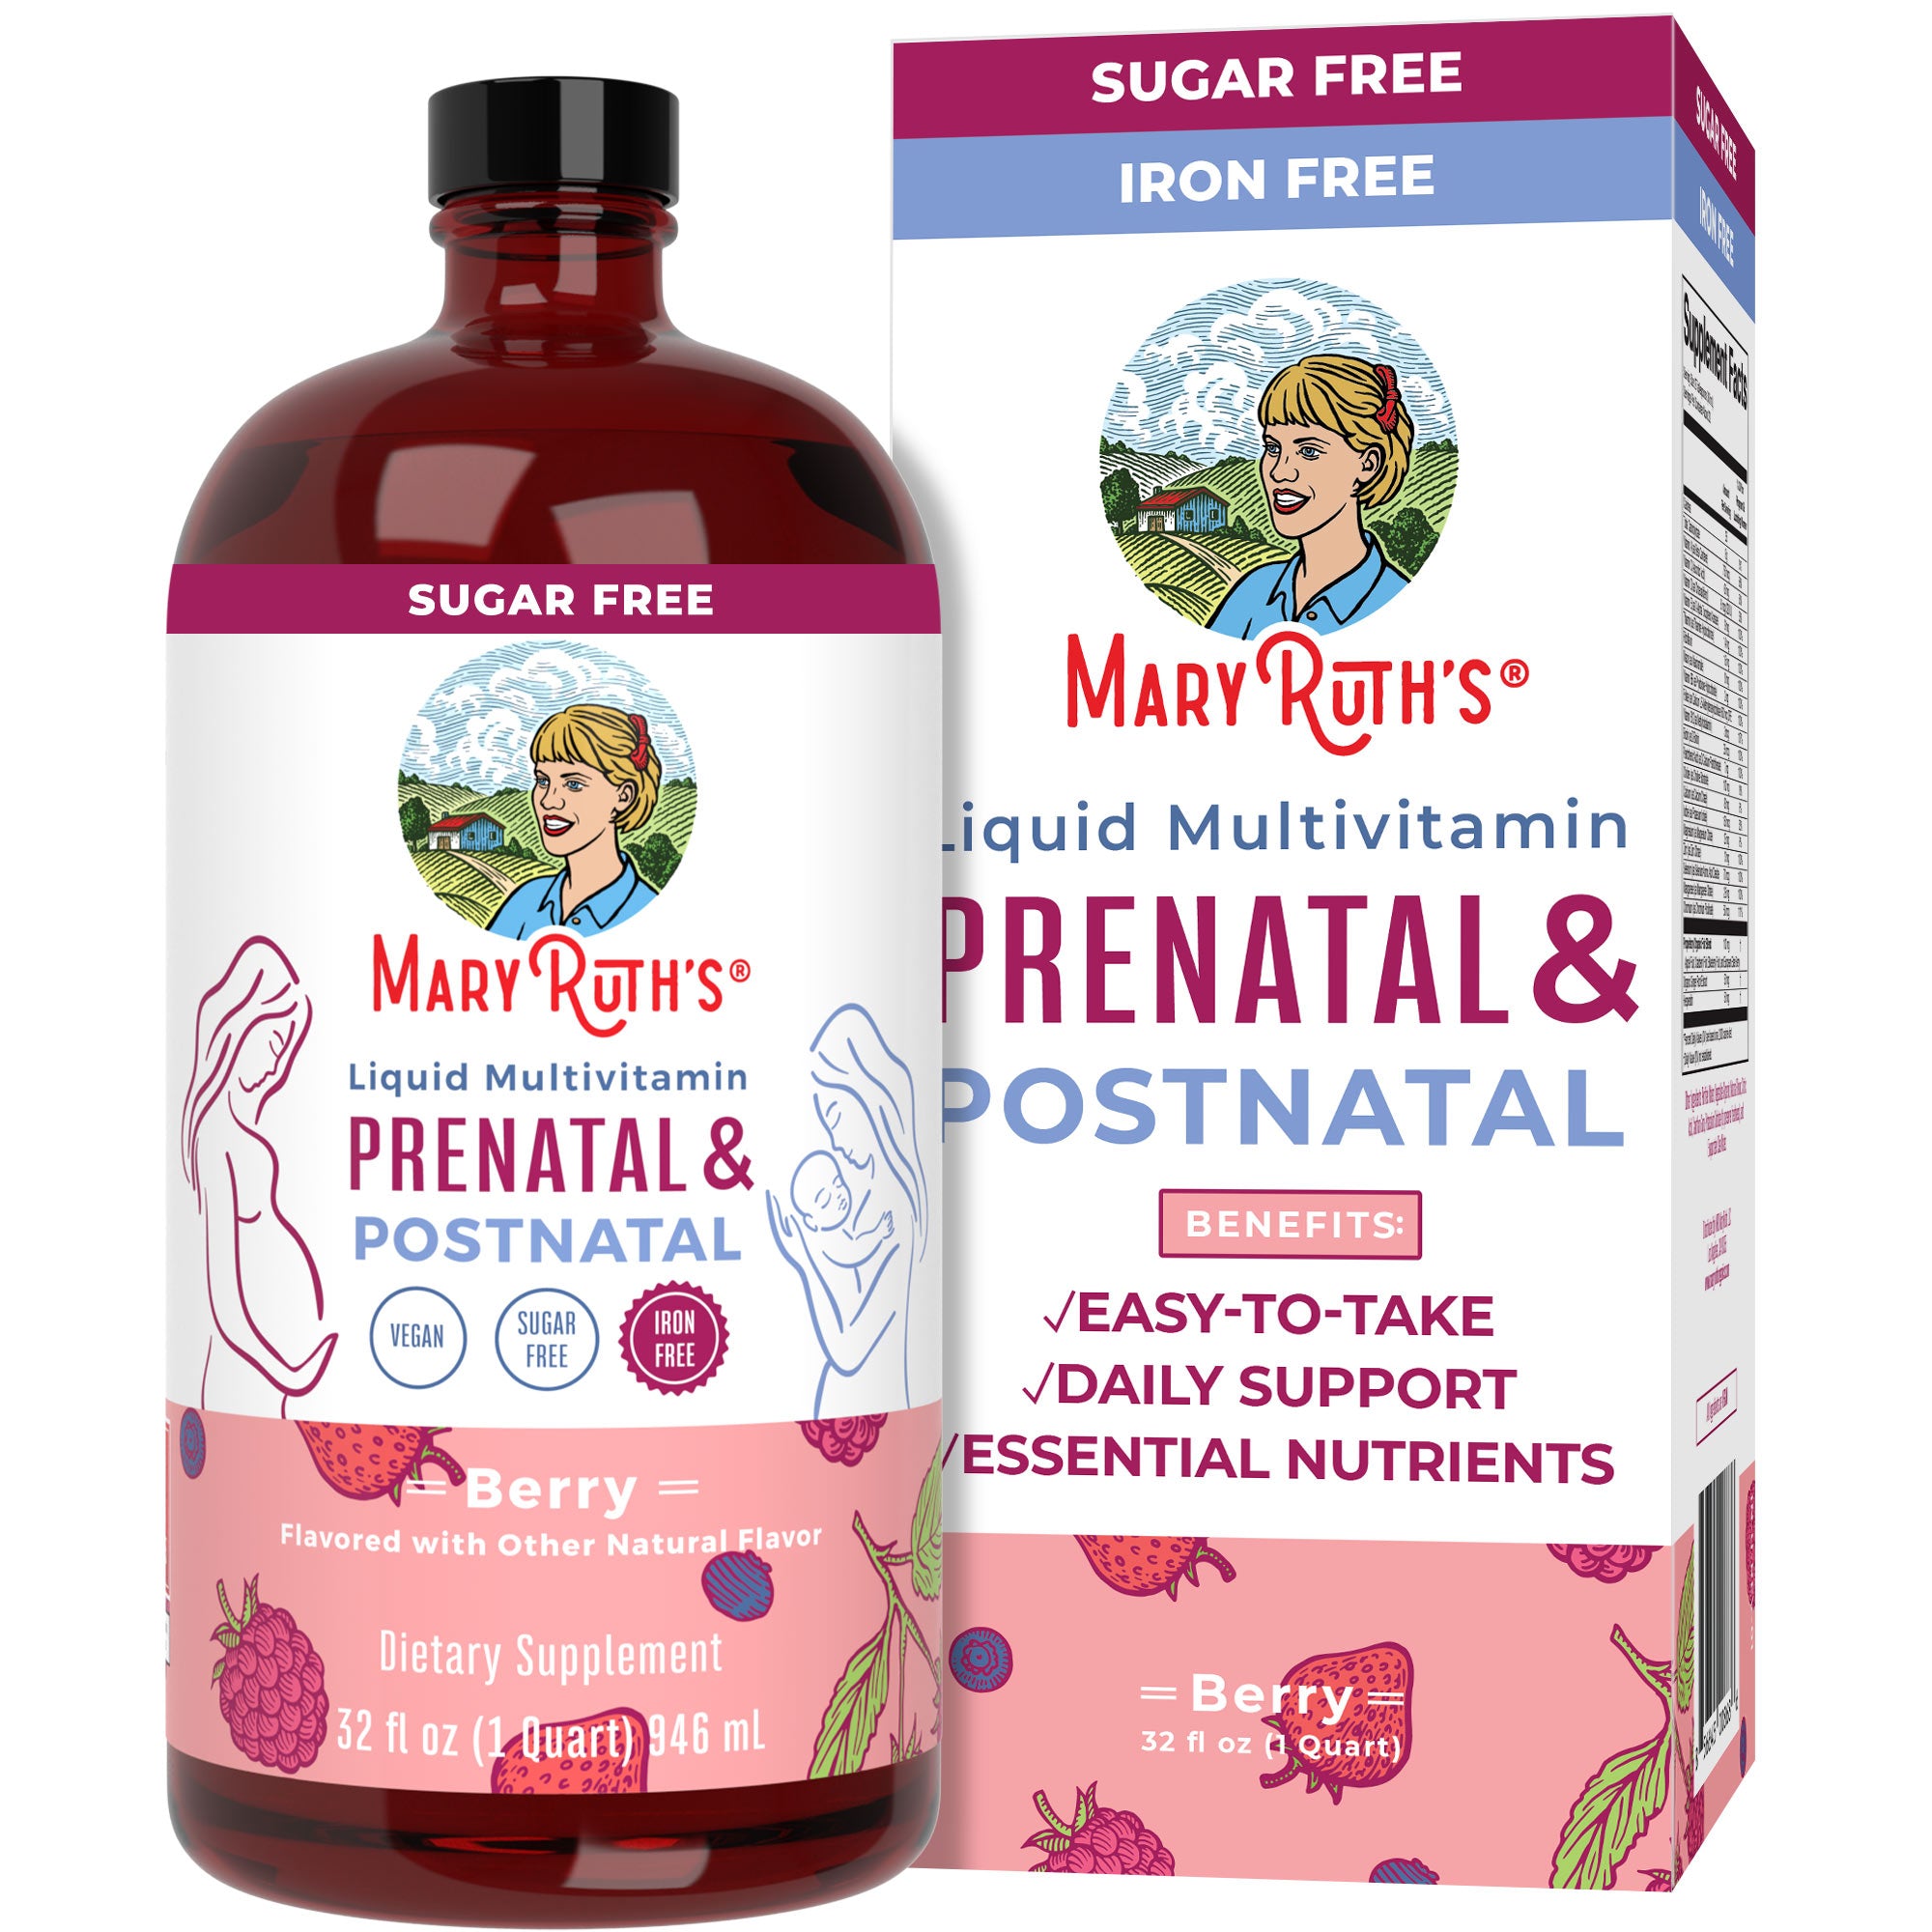 Prenatal & Postnatal Liquid Multivitamin